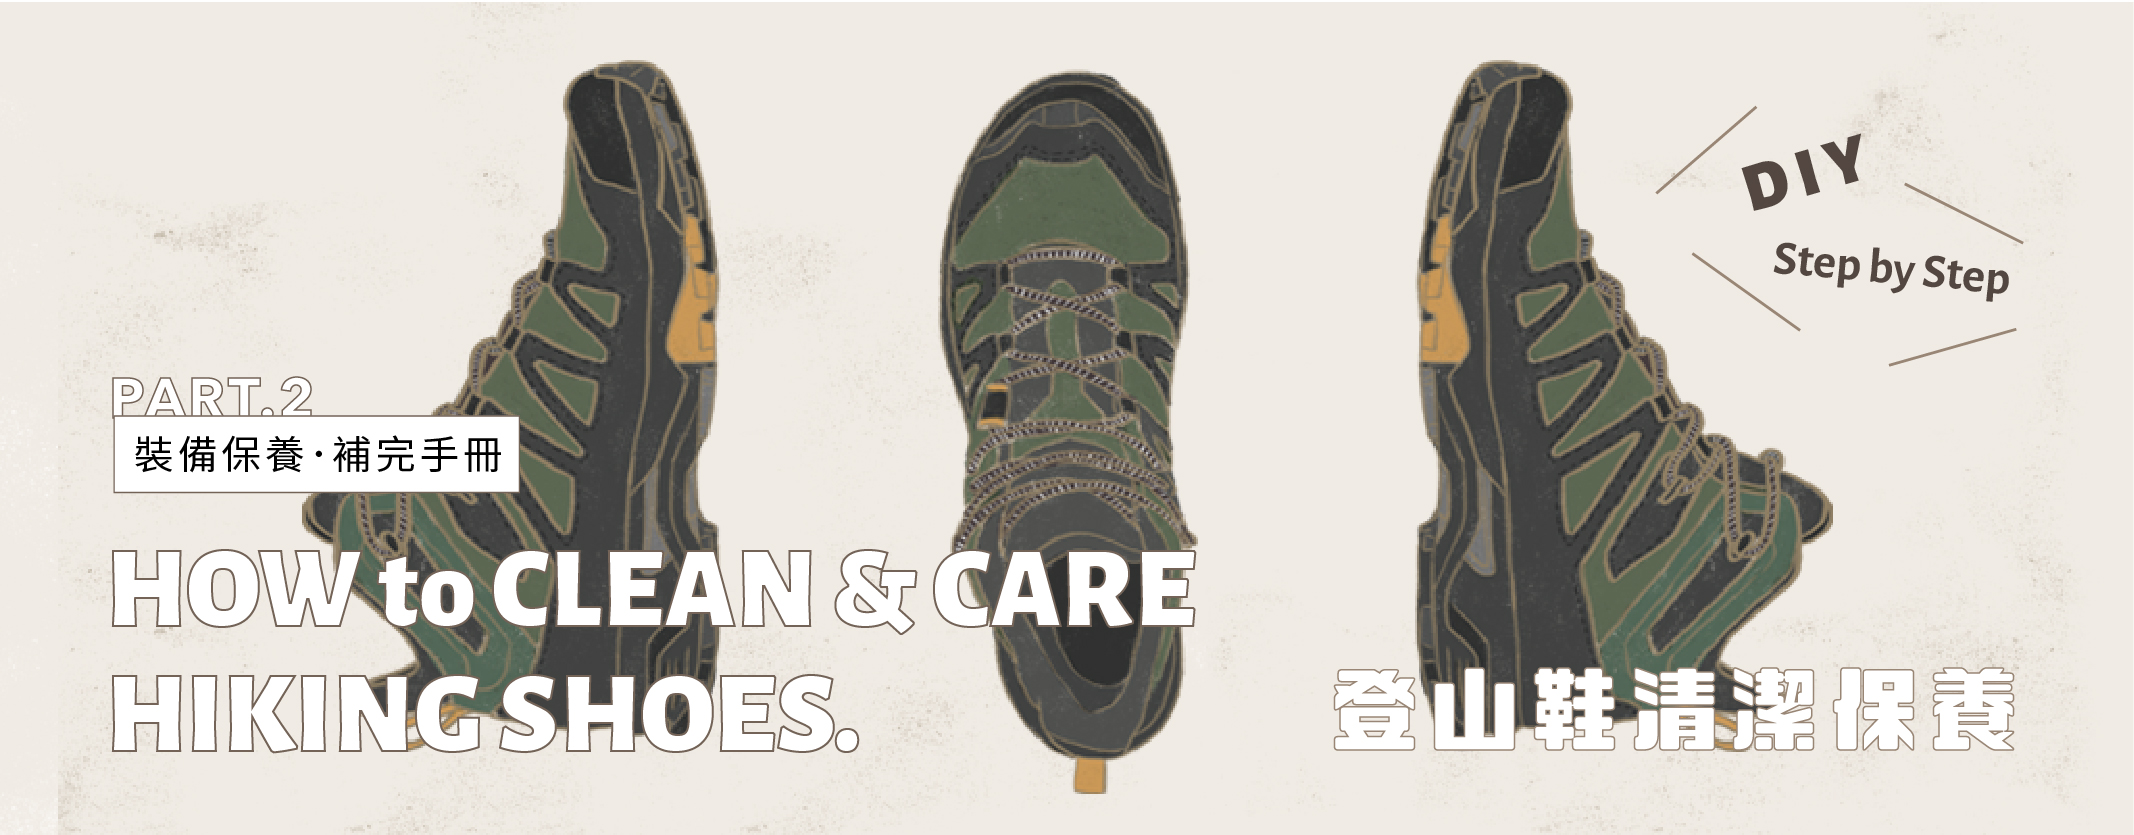 【裝備保養】PART 2. ​ 如何清潔您的登山鞋​